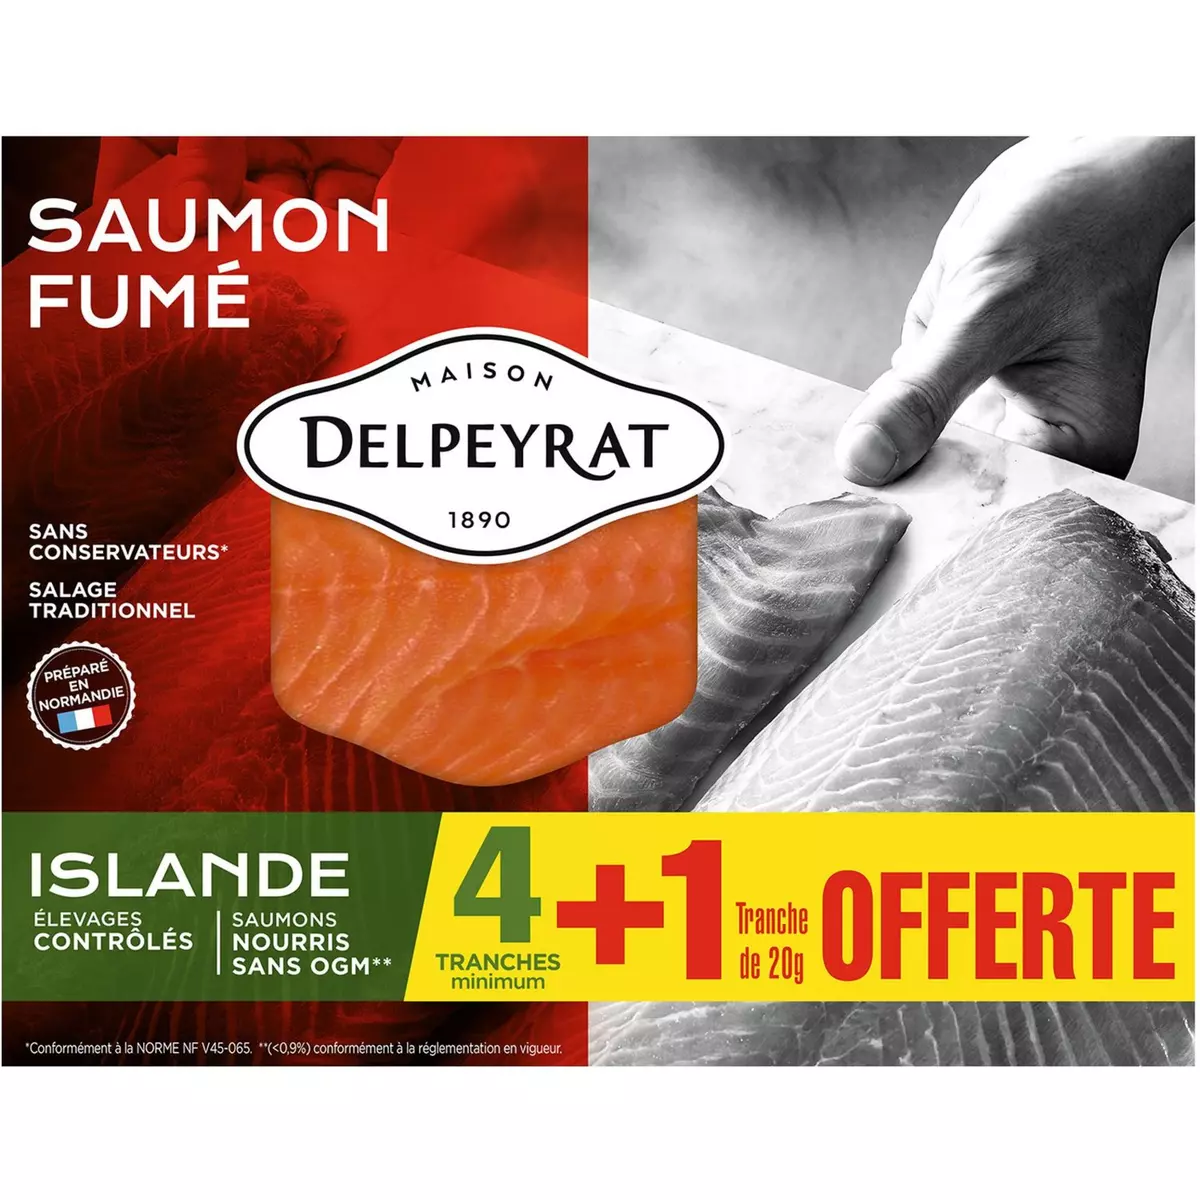 DELPEYRAT Le Saumon Fumé Delpeyrat origine Islande 4 Tranches mini +1offerte 150g 4 tranches +1 offerte 150g